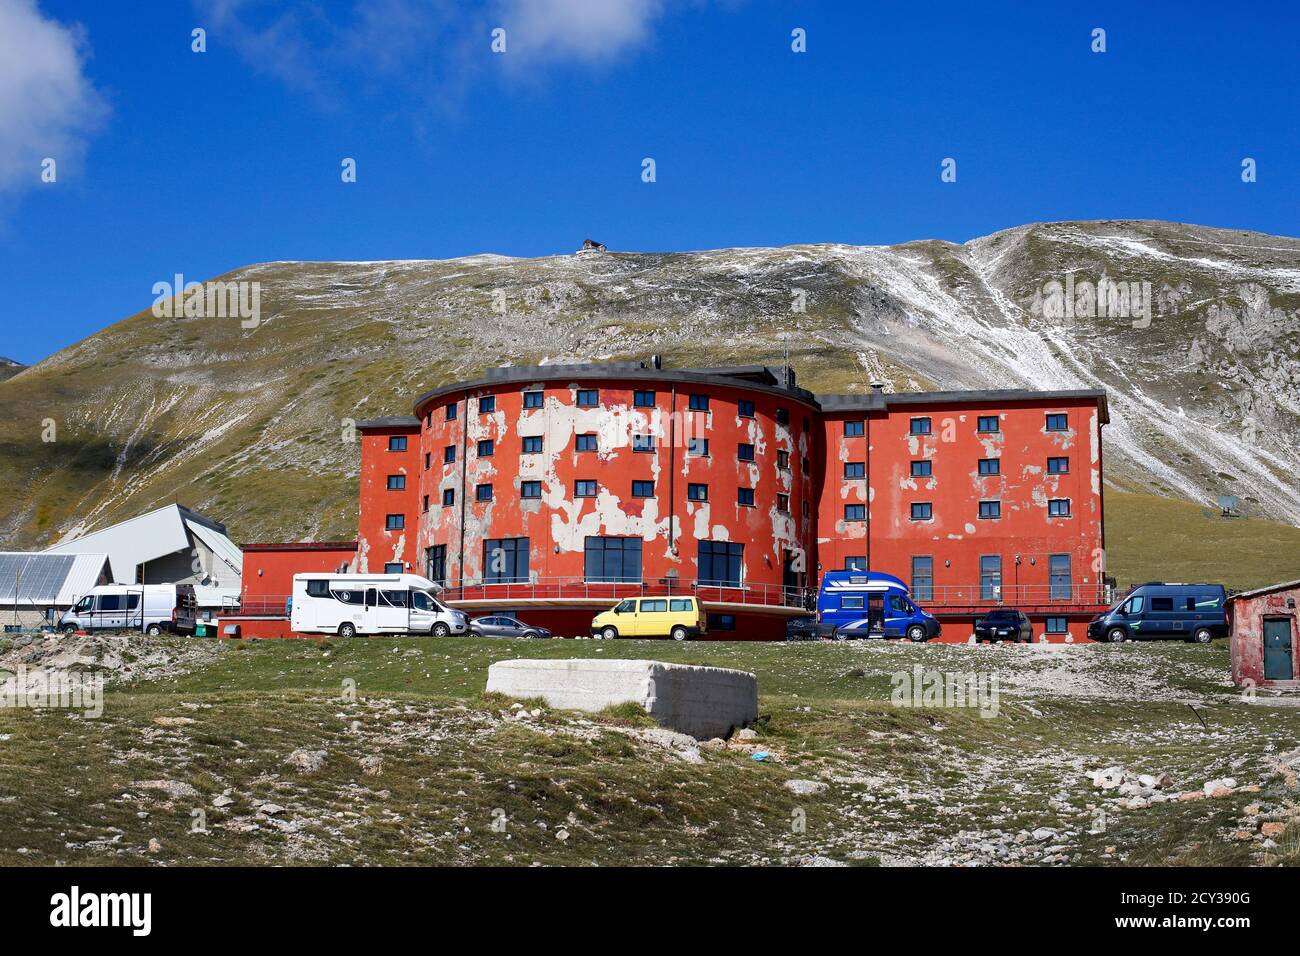 Campo Imperatore nel Gran Sasso, Abruzzo, Italia. L'Hotel campo Imperatore è l'edificio rosso. Foto Stock